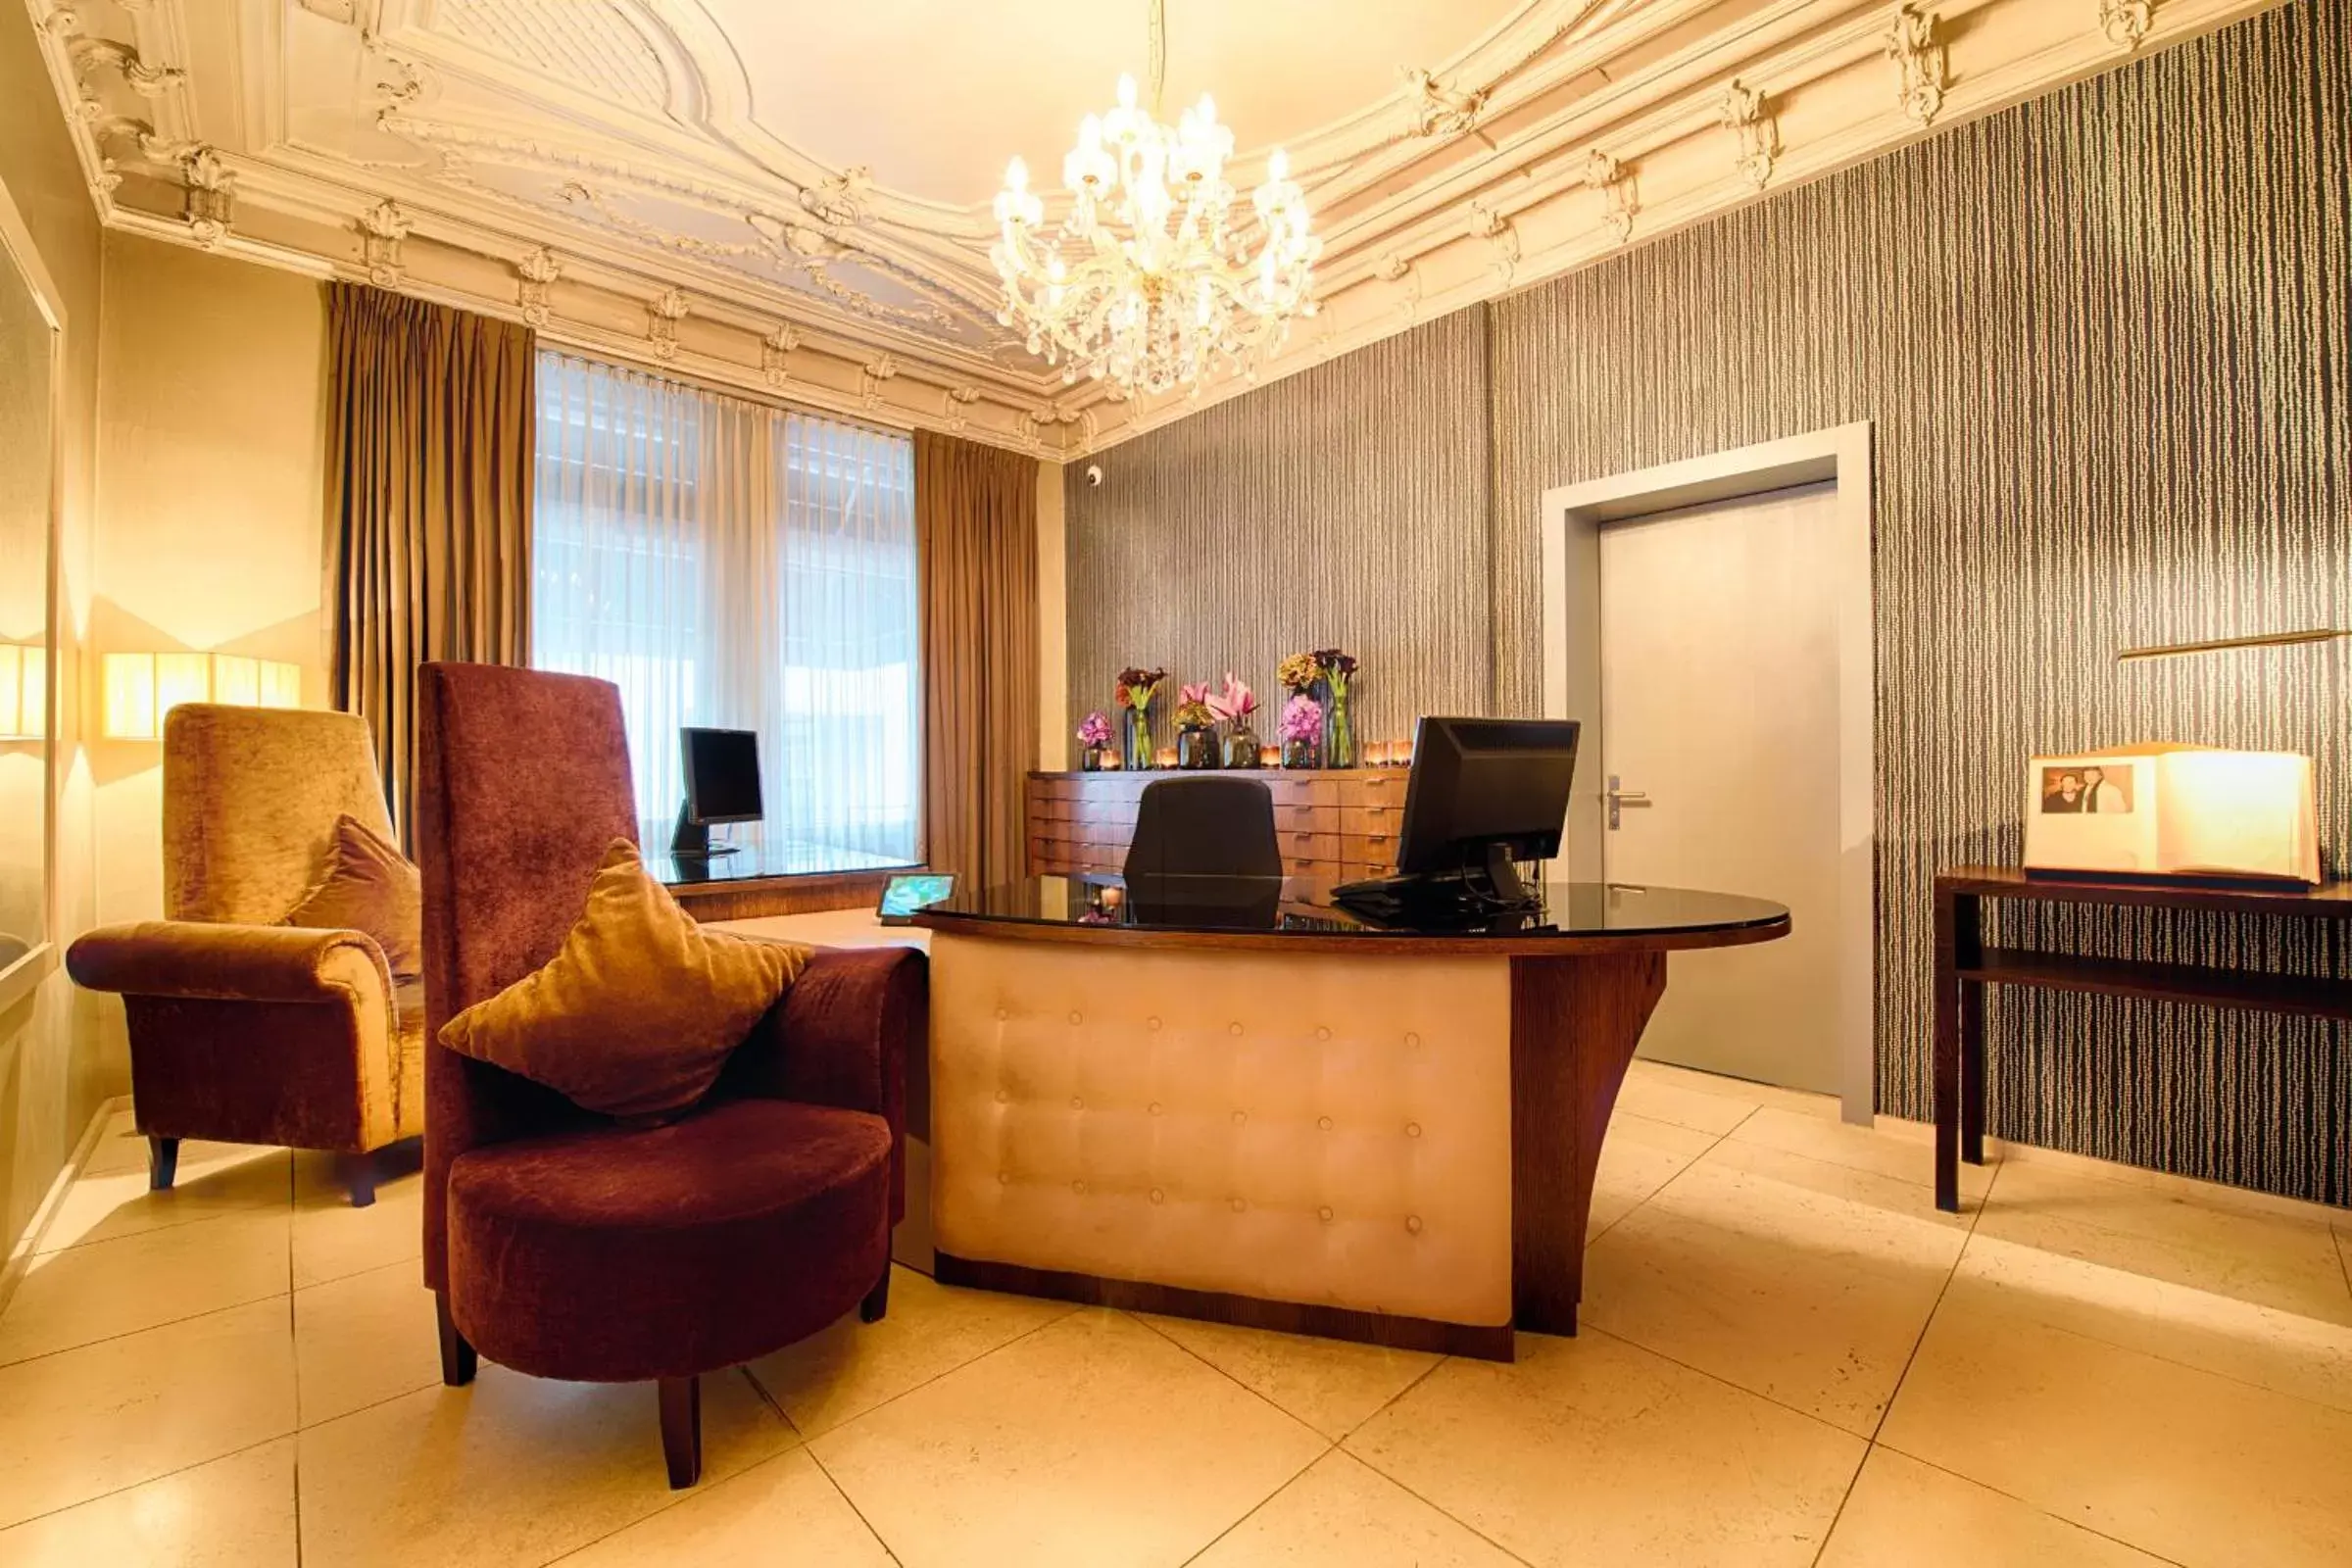 Lobby or reception, Lobby/Reception in Alden Suite Hotel Splügenschloss Zurich